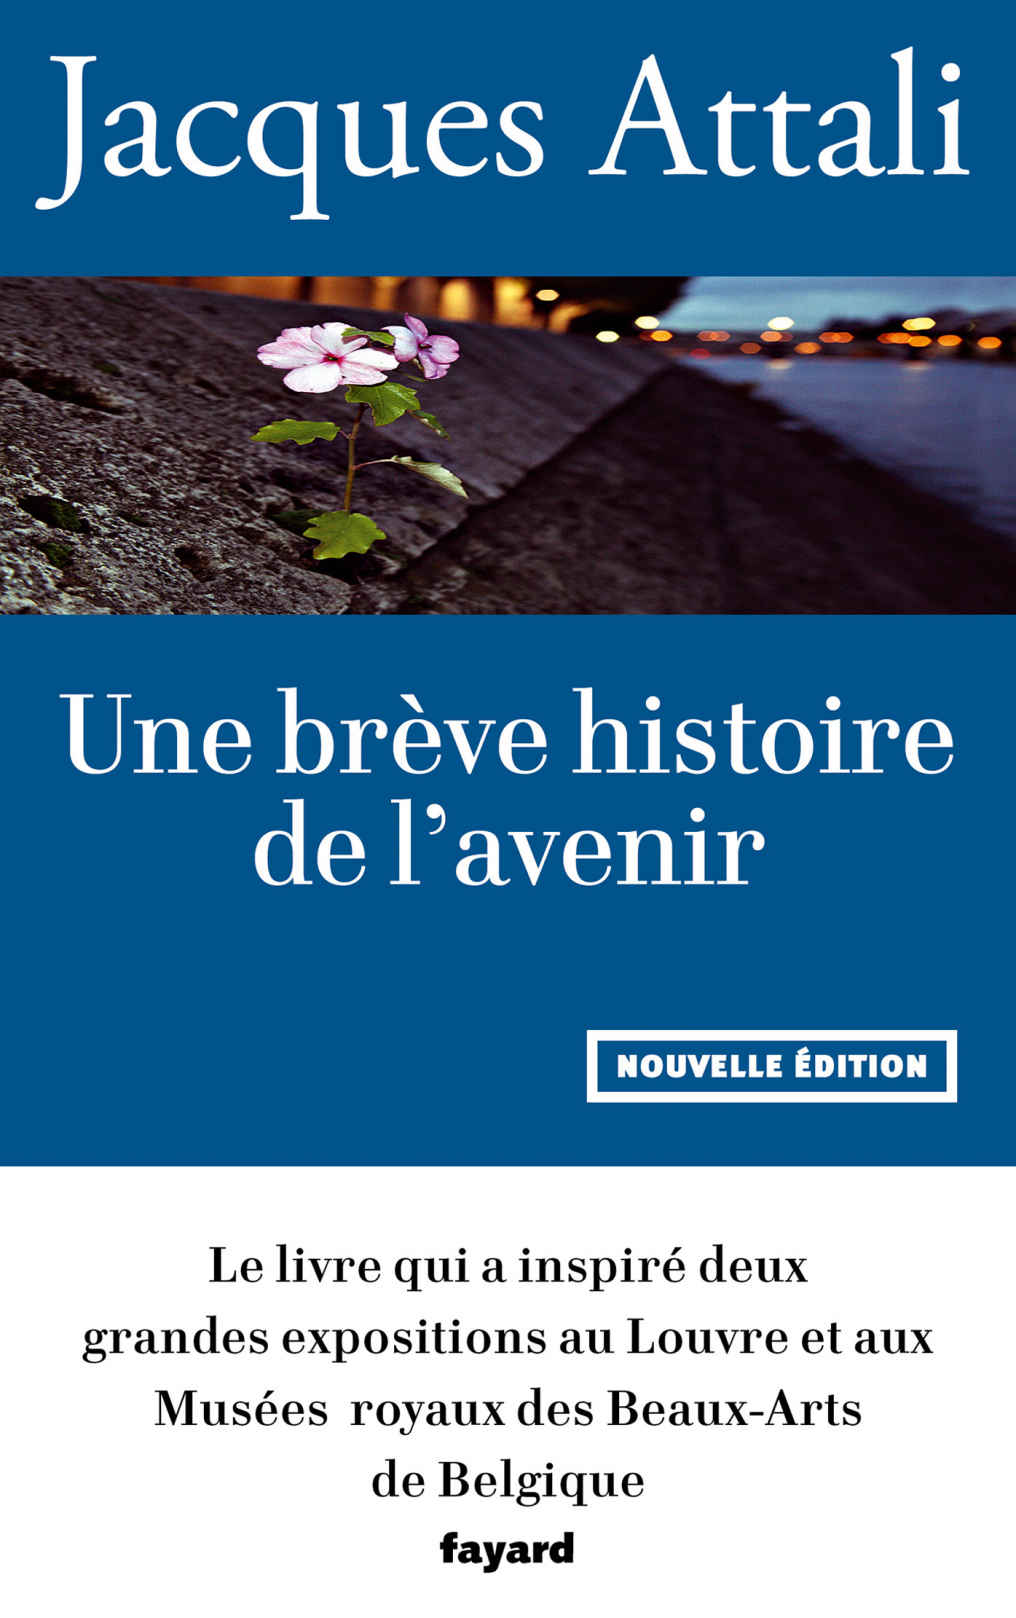 Jacques Attali - Une brève histoire de l'avenir: Nouvelle édition, revue et augmentée